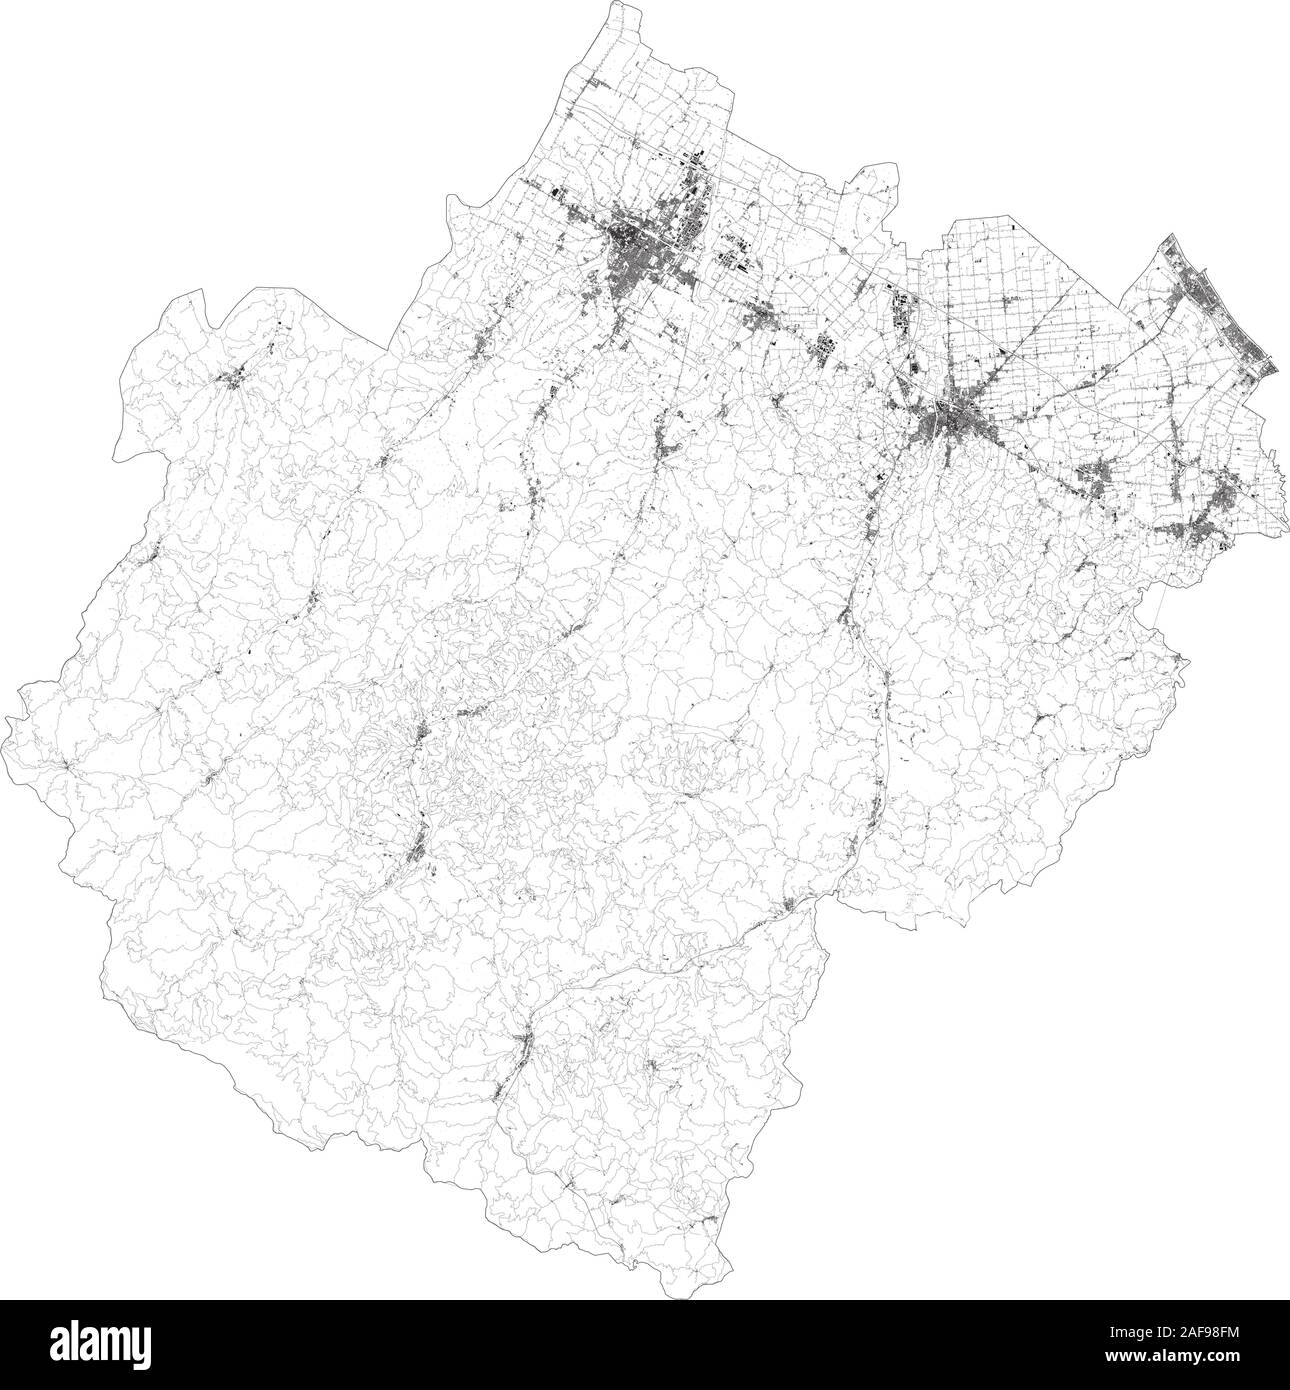 Mapa satelital de la provincia de Forli-Cesena ciudades y carreteras, edificios y carreteras de los alrededores. La región de Emilia-Romaña, Italia. Mapa de carretera Ilustración del Vector